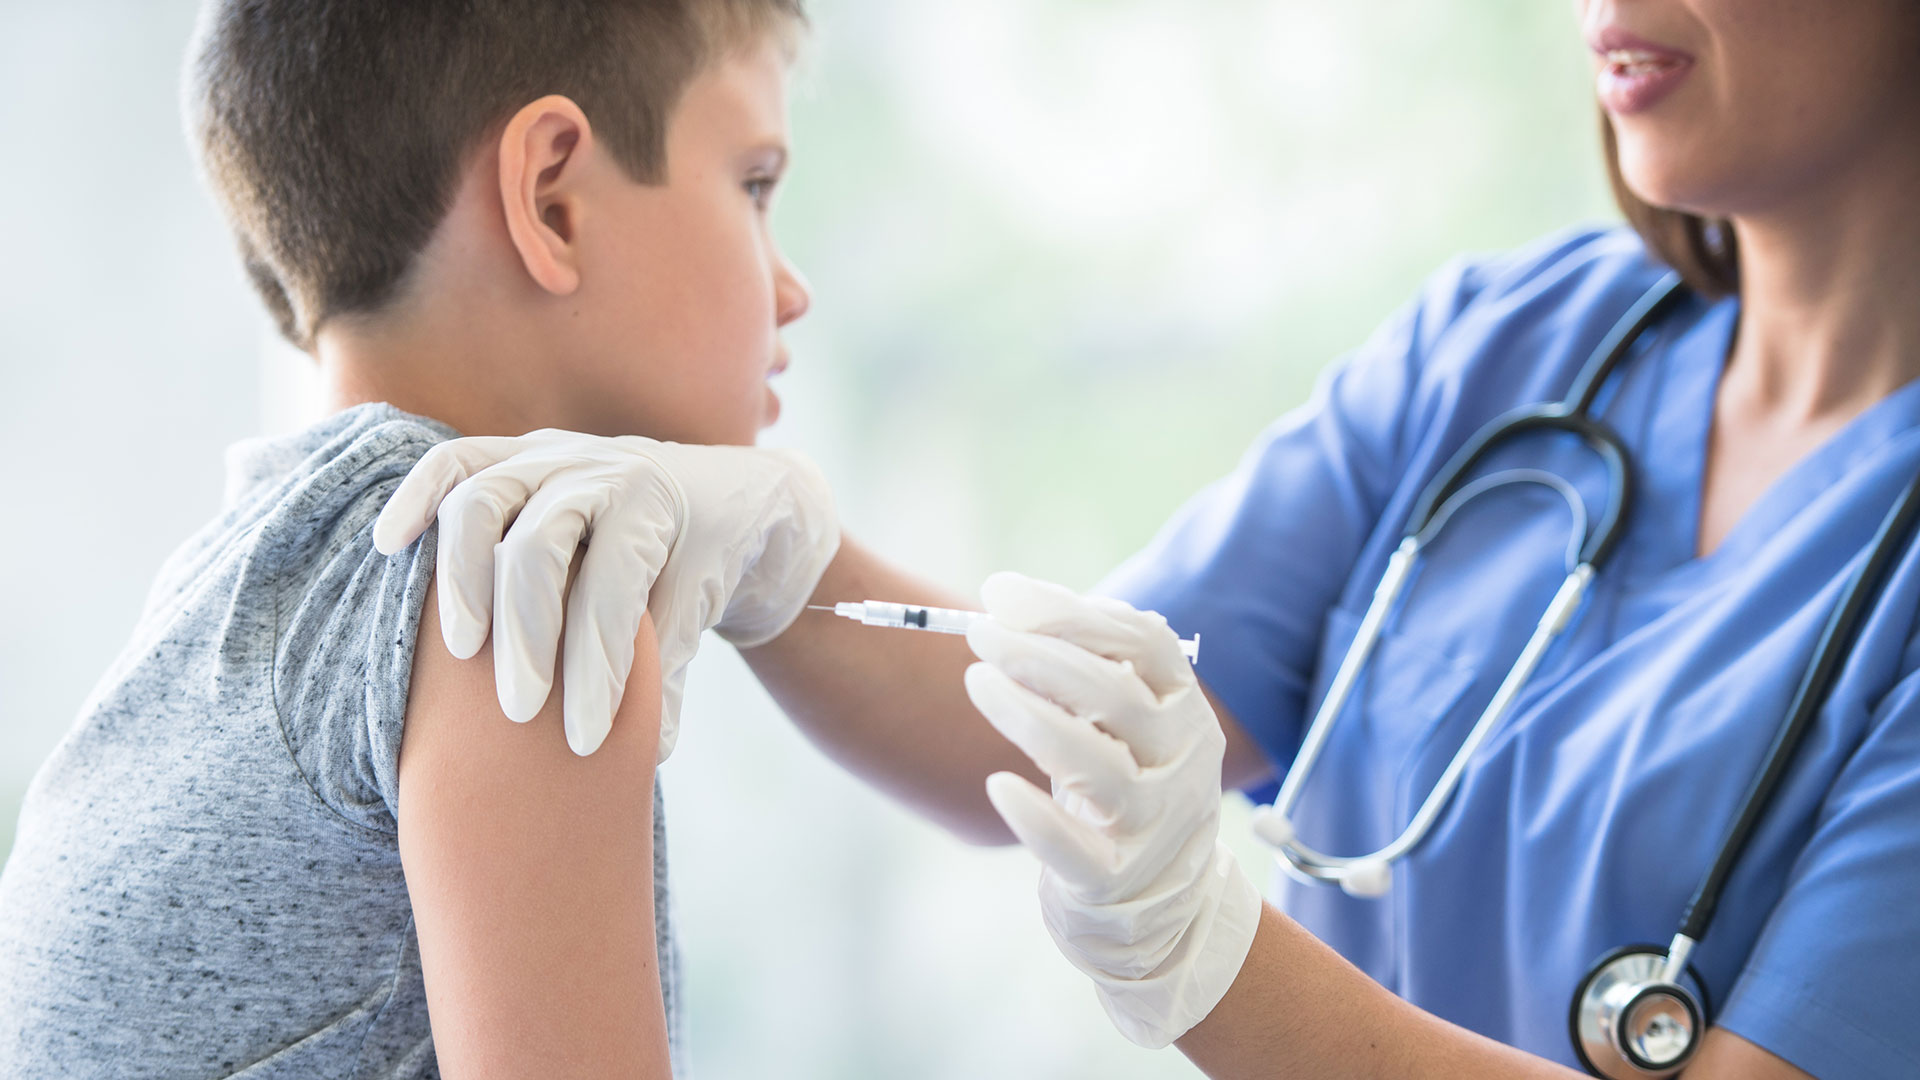 Procuraduría solicitó a alcaldes y gobernadores crear estrategias de vacunación para niños en áreas rurales y urbanas (Getty Images)